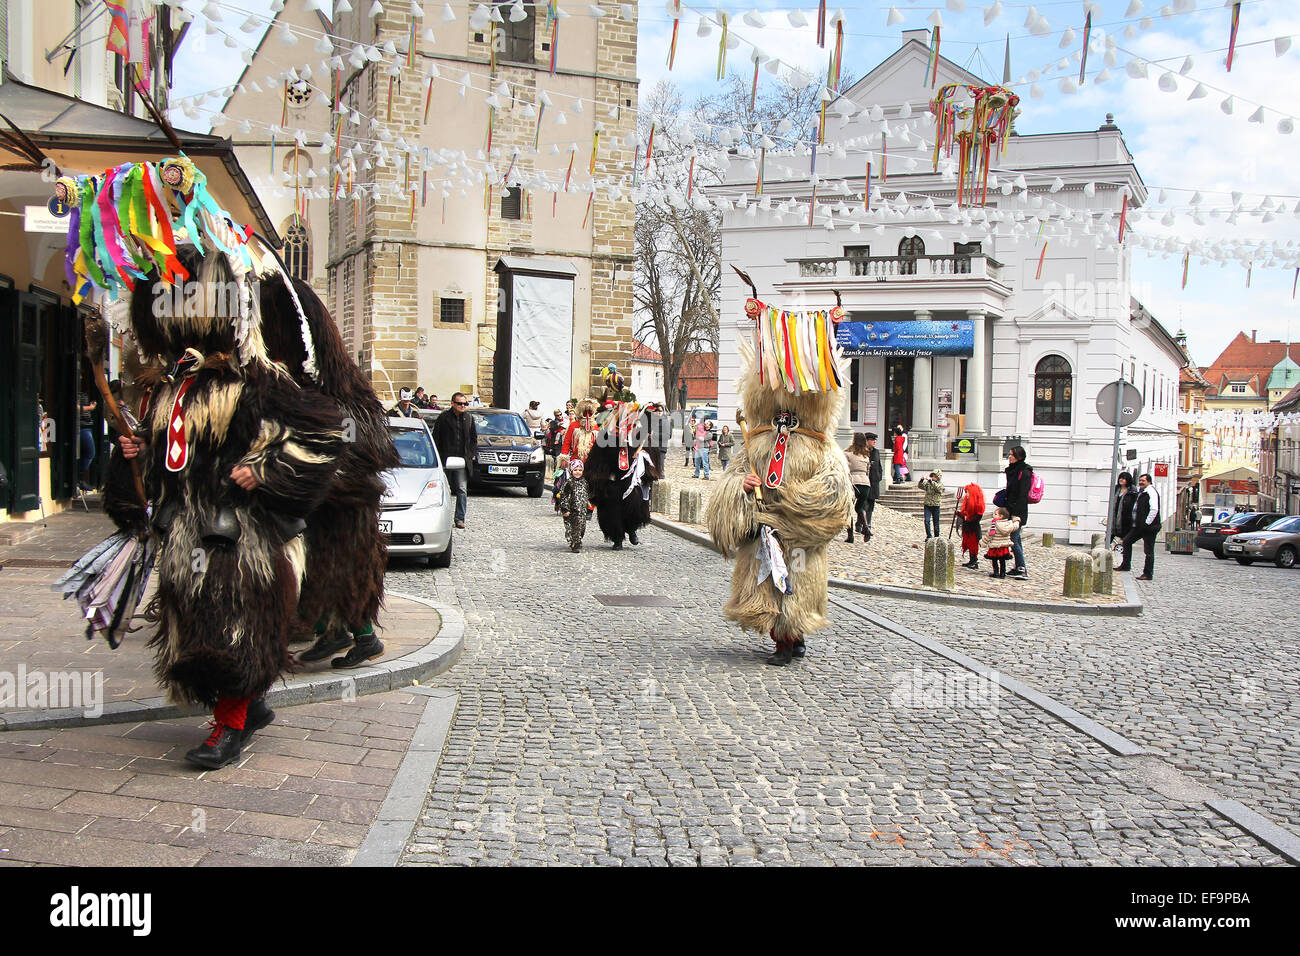 PTUJ, Slovenia - 1 Marzo: Kurent è lo sloveno vecchio tradizionale maschera di carnevale con campane e vestito di pelliccia. Essi scacciano la w Foto Stock